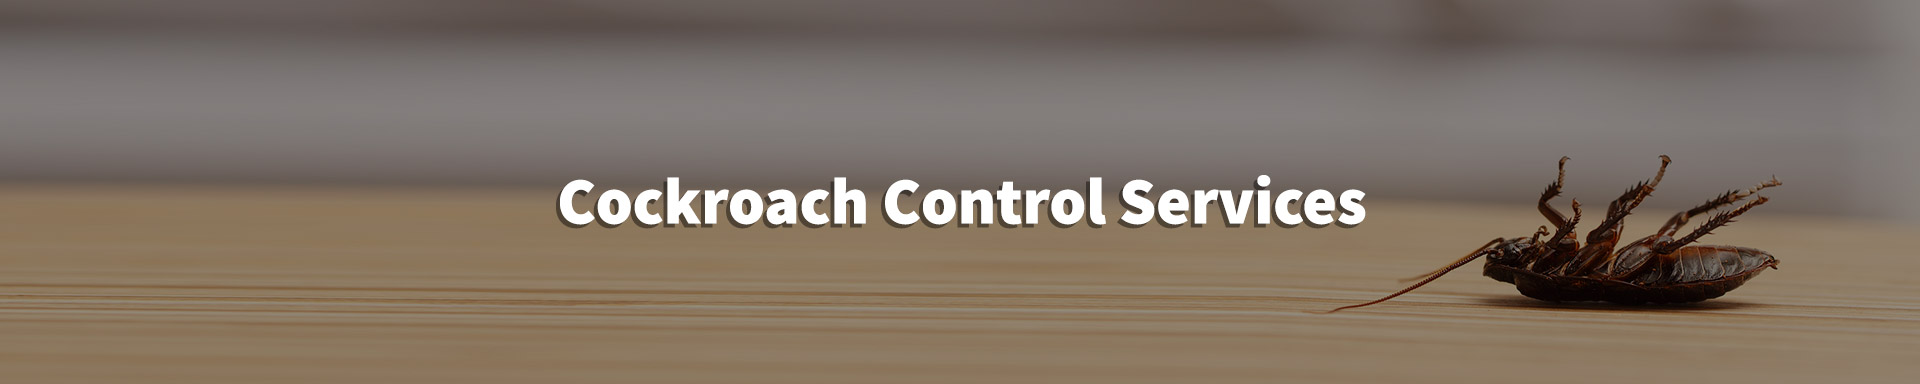 cockroach control header